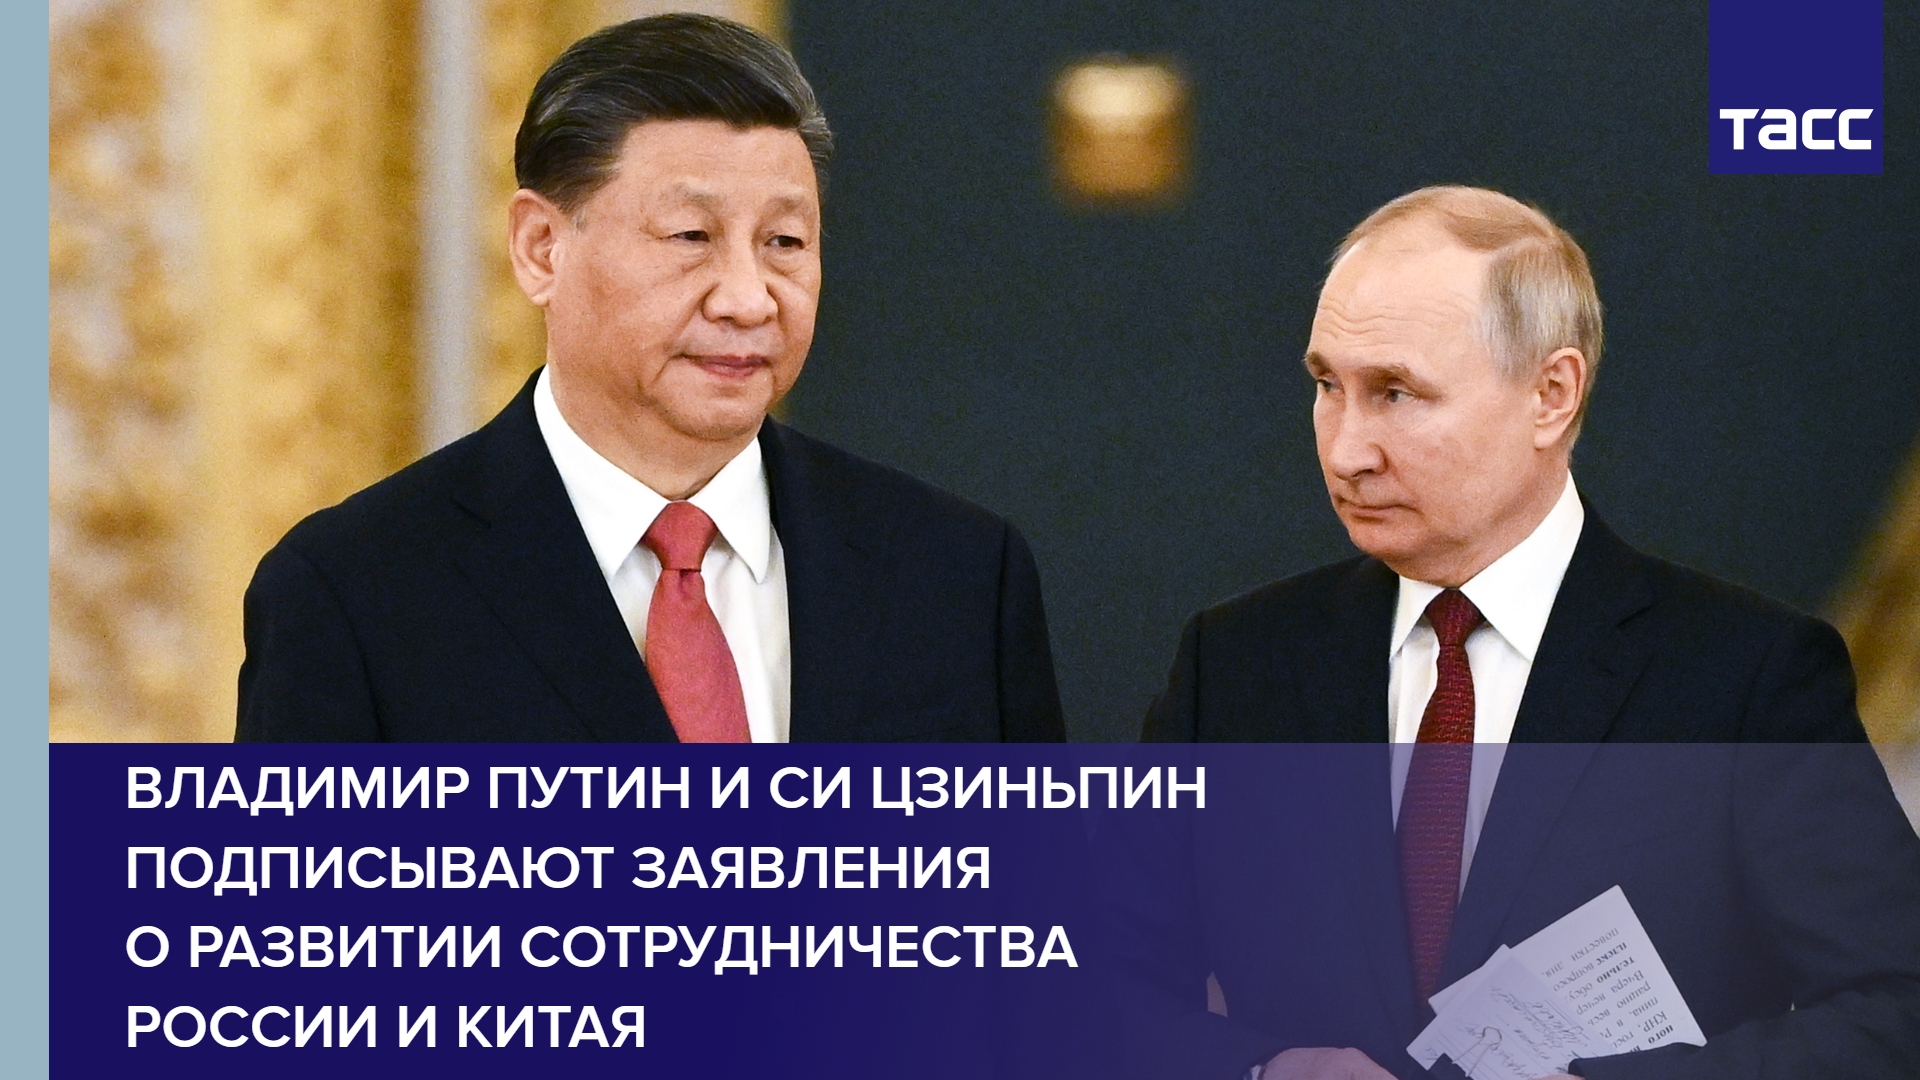 Владимир Путин и Си Цзиньпин подписывают заявления о развитии сотрудничества России и Китая #shorts